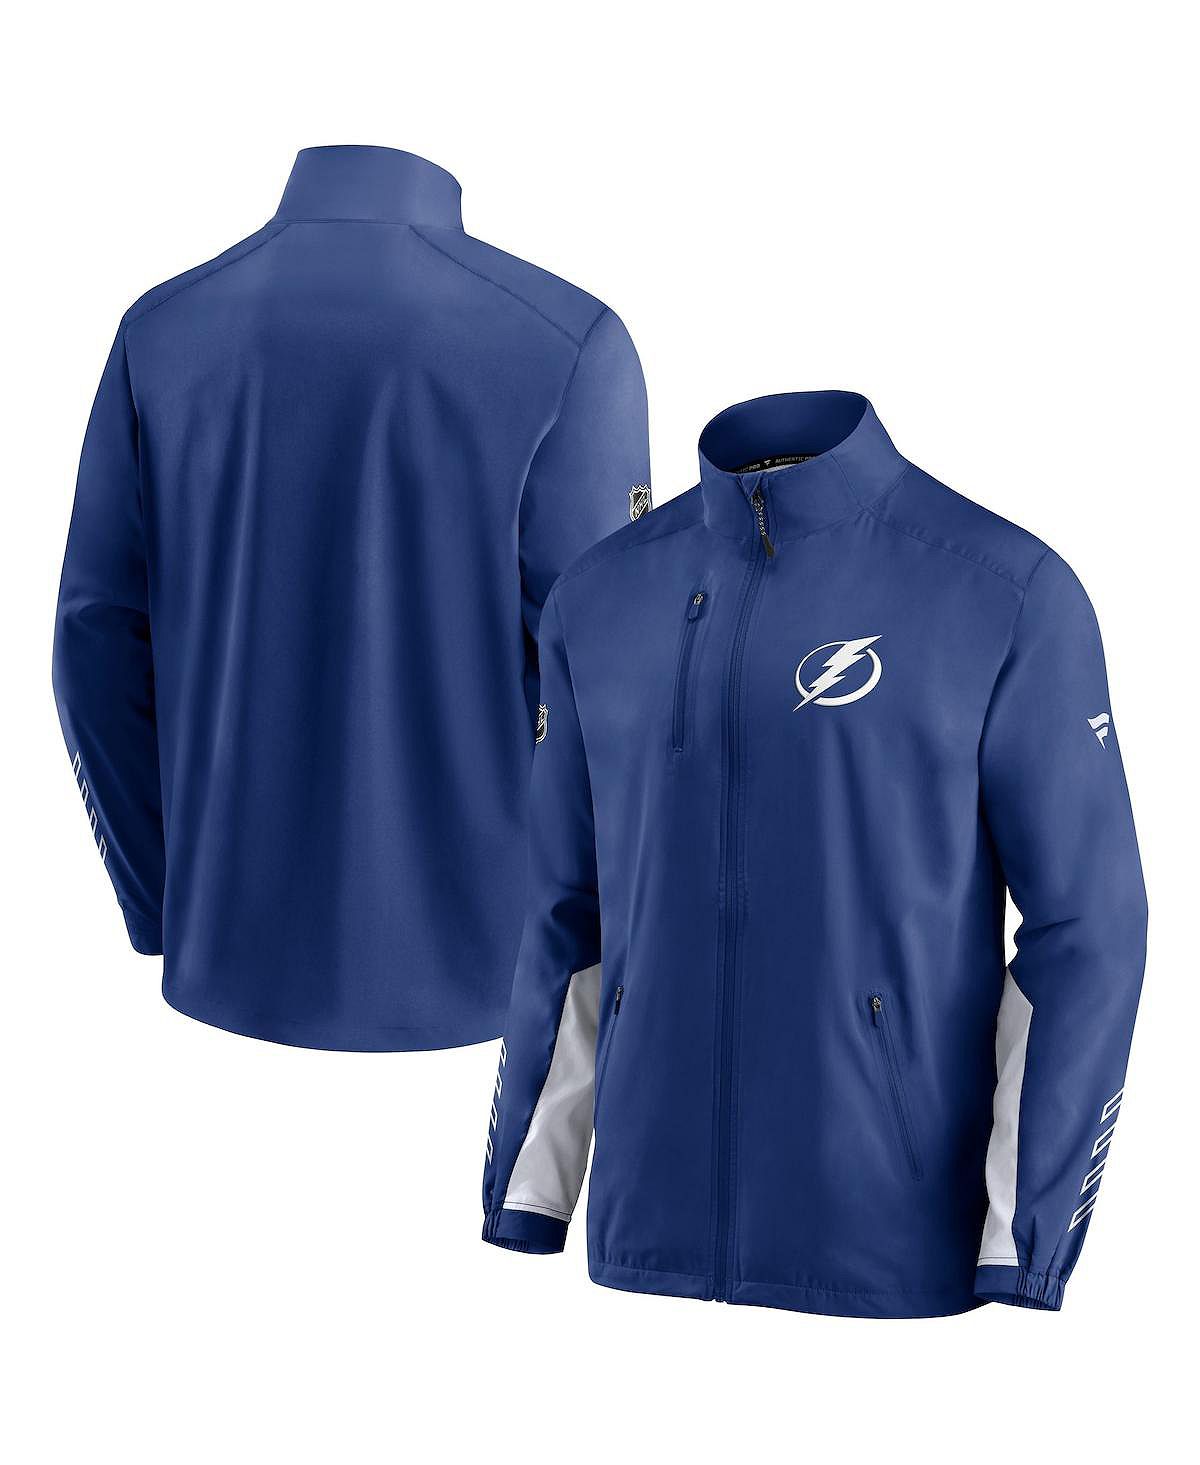 Мужская фирменная синяя куртка tampa bay lightning authentic pro locker room rinkside с полной молнией Fanatics, синий printio коврик для мышки tampa bay lightning